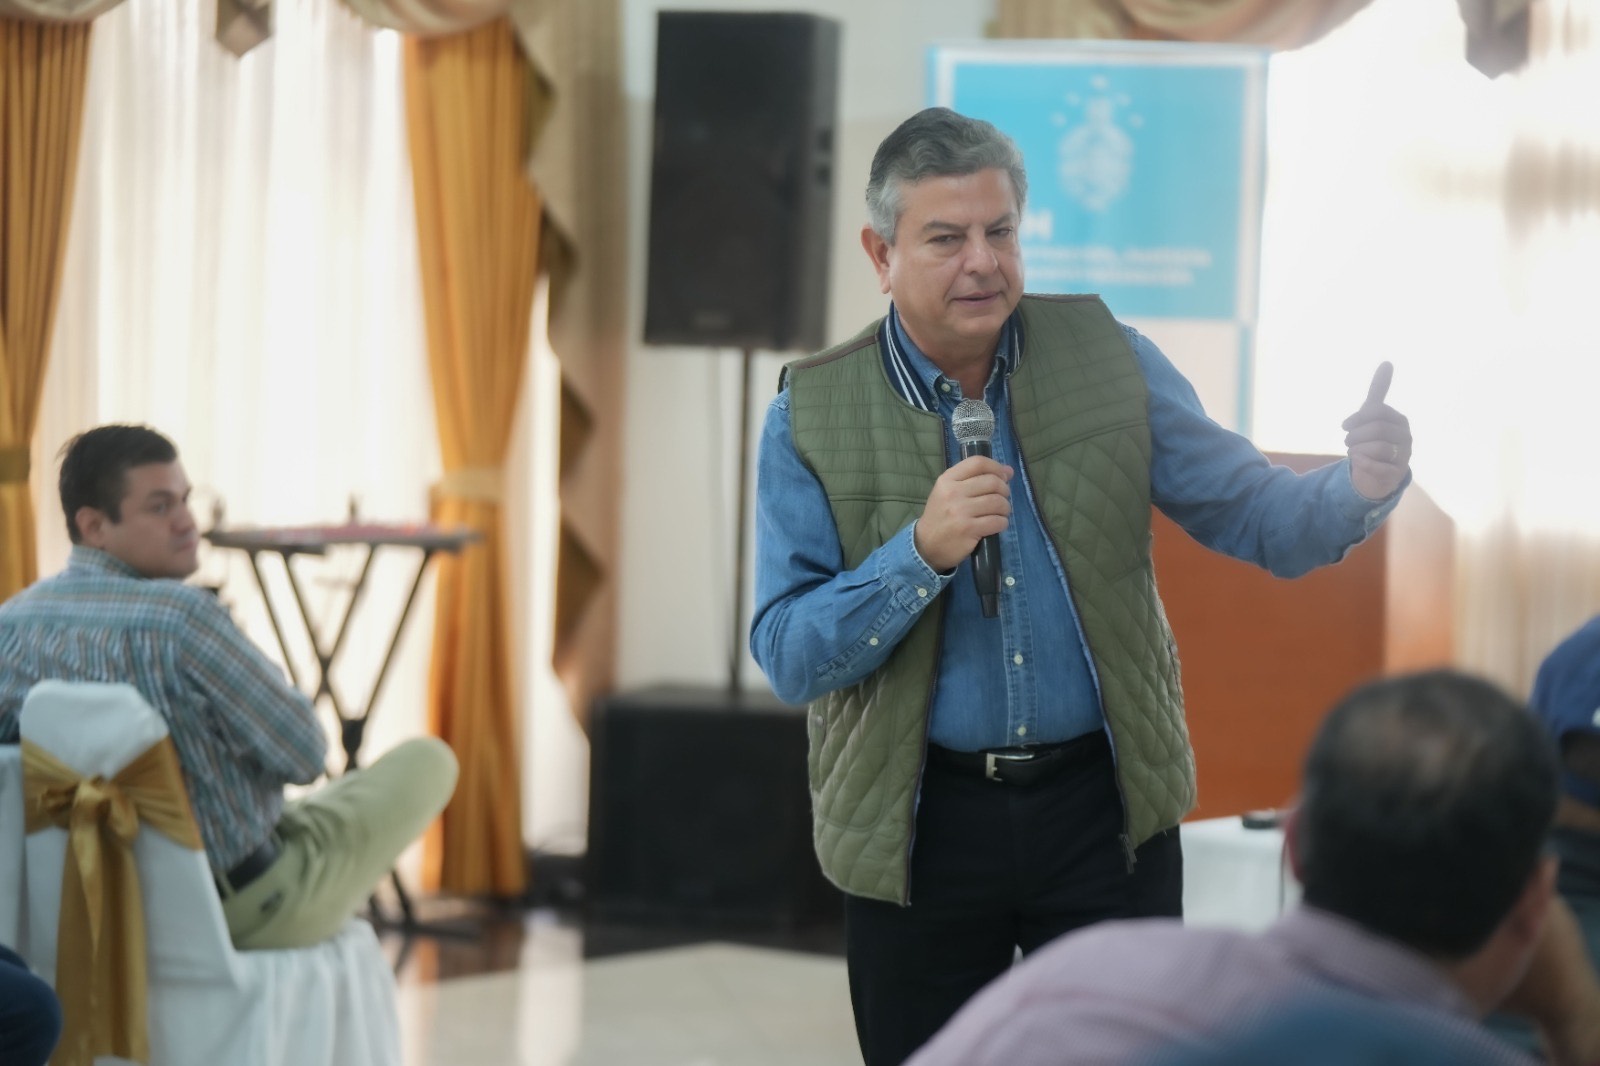 Tomás Vaquero: “Vamos a construir el desarrollo nacional a través de la unidad de los municipios, sin ver sectarismos políticos”